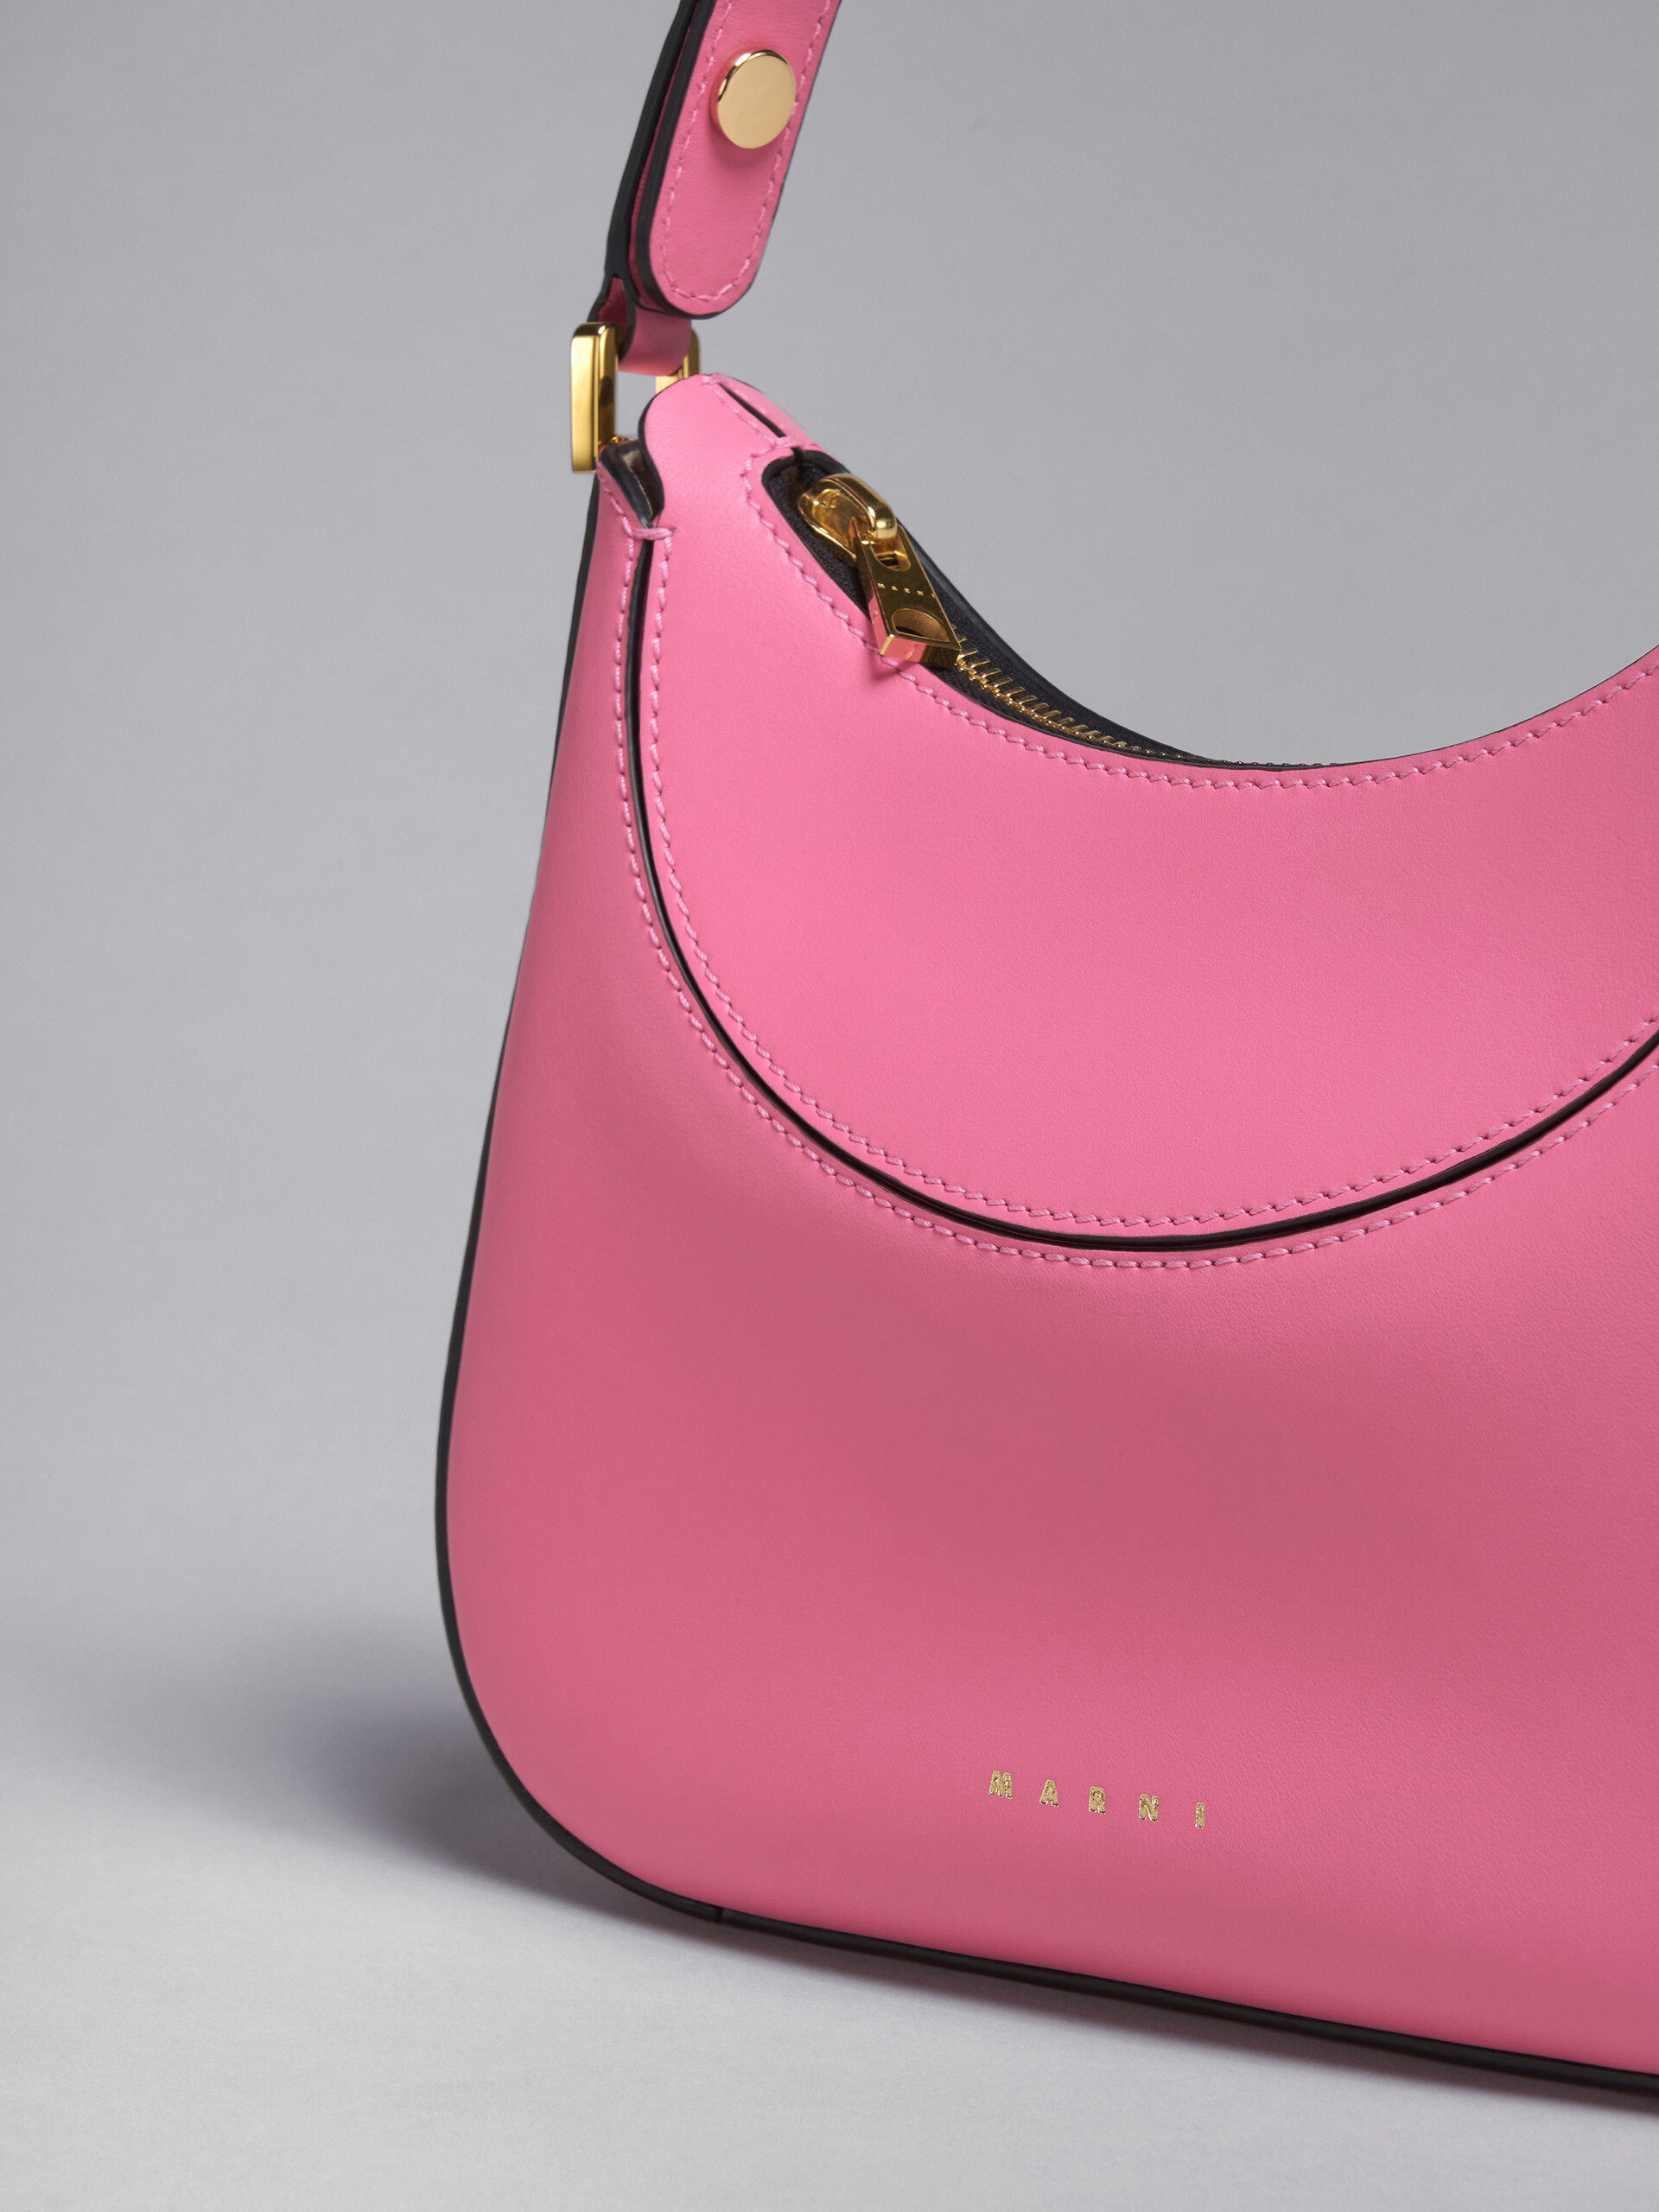 Milano bag mini in pelle rosa - Borse a mano - Image 5